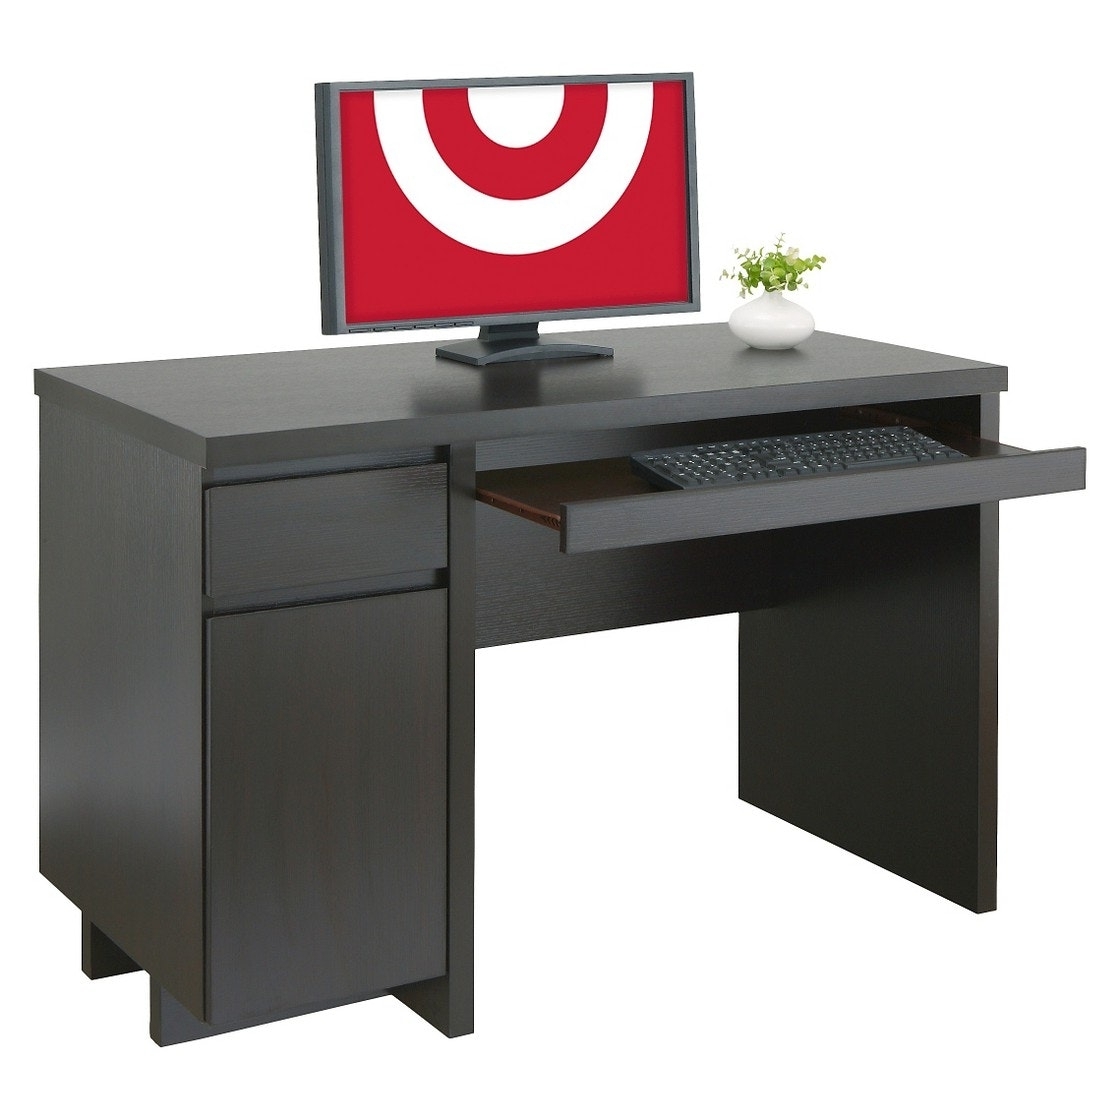 Computer Desks At Target